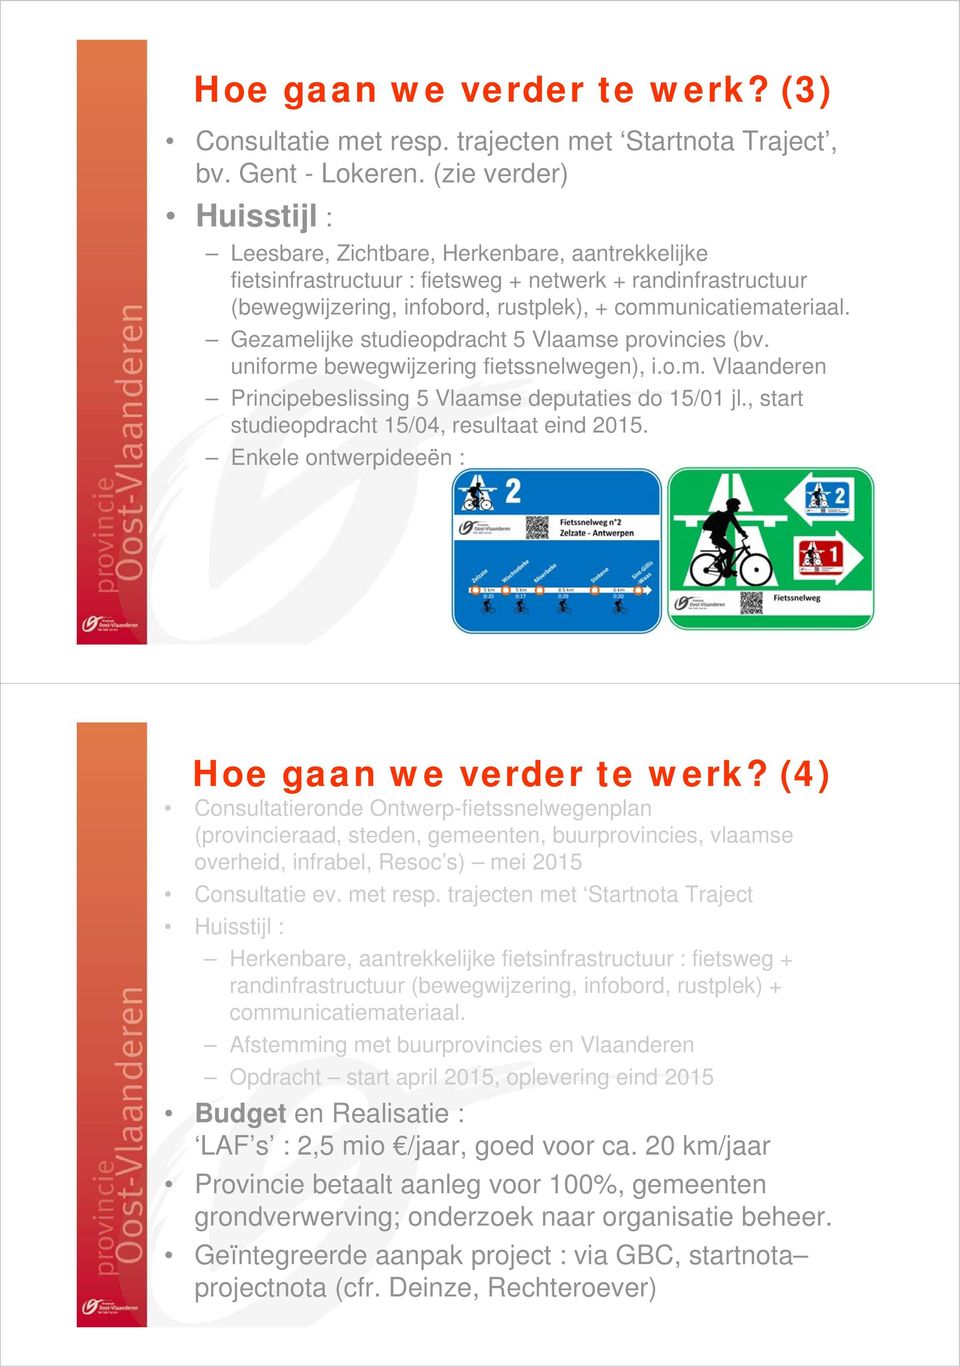 Gezamelijke studieopdracht 5 Vlaamse provincies (bv. uniforme bewegwijzering fietssnelwegen), i.o.m. Vlaanderen Principebeslissing 5 Vlaamse deputaties do 15/01 jl.